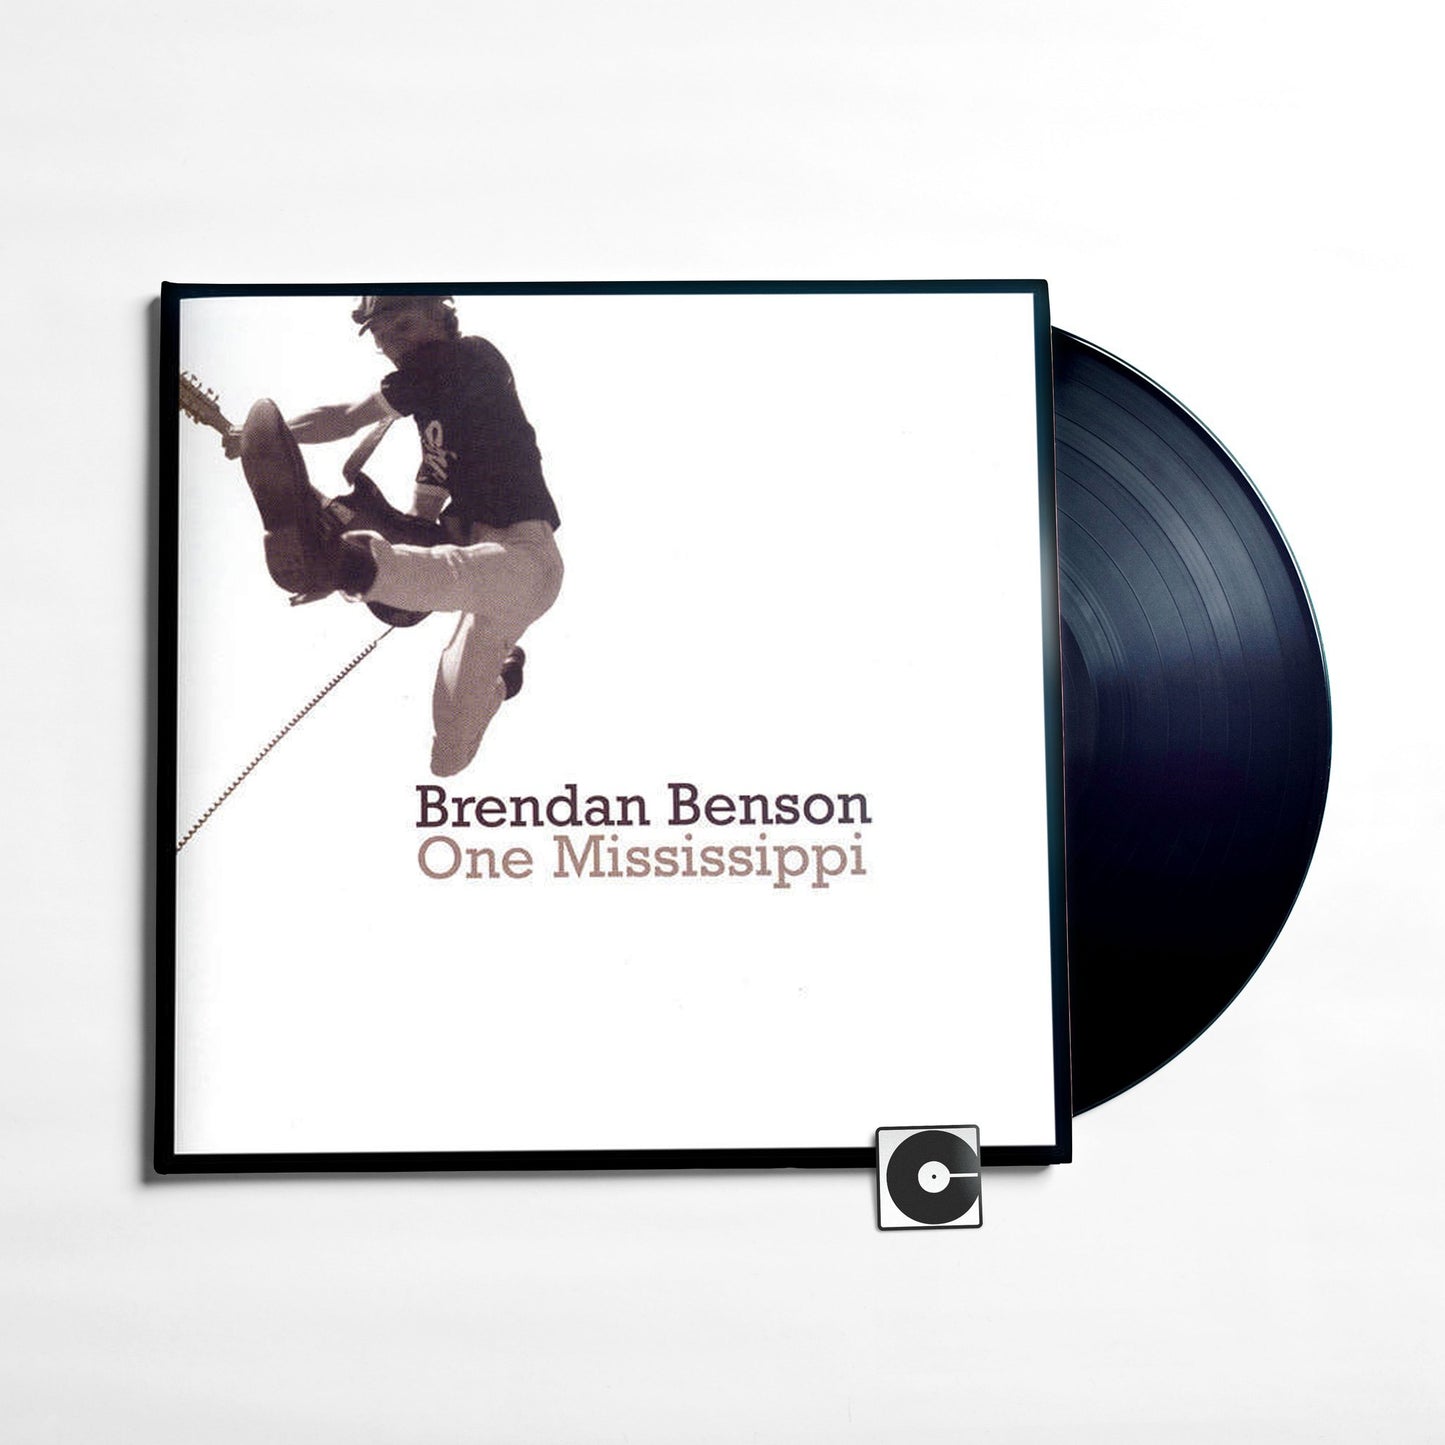 Brendan Benson - "One Mississippi"